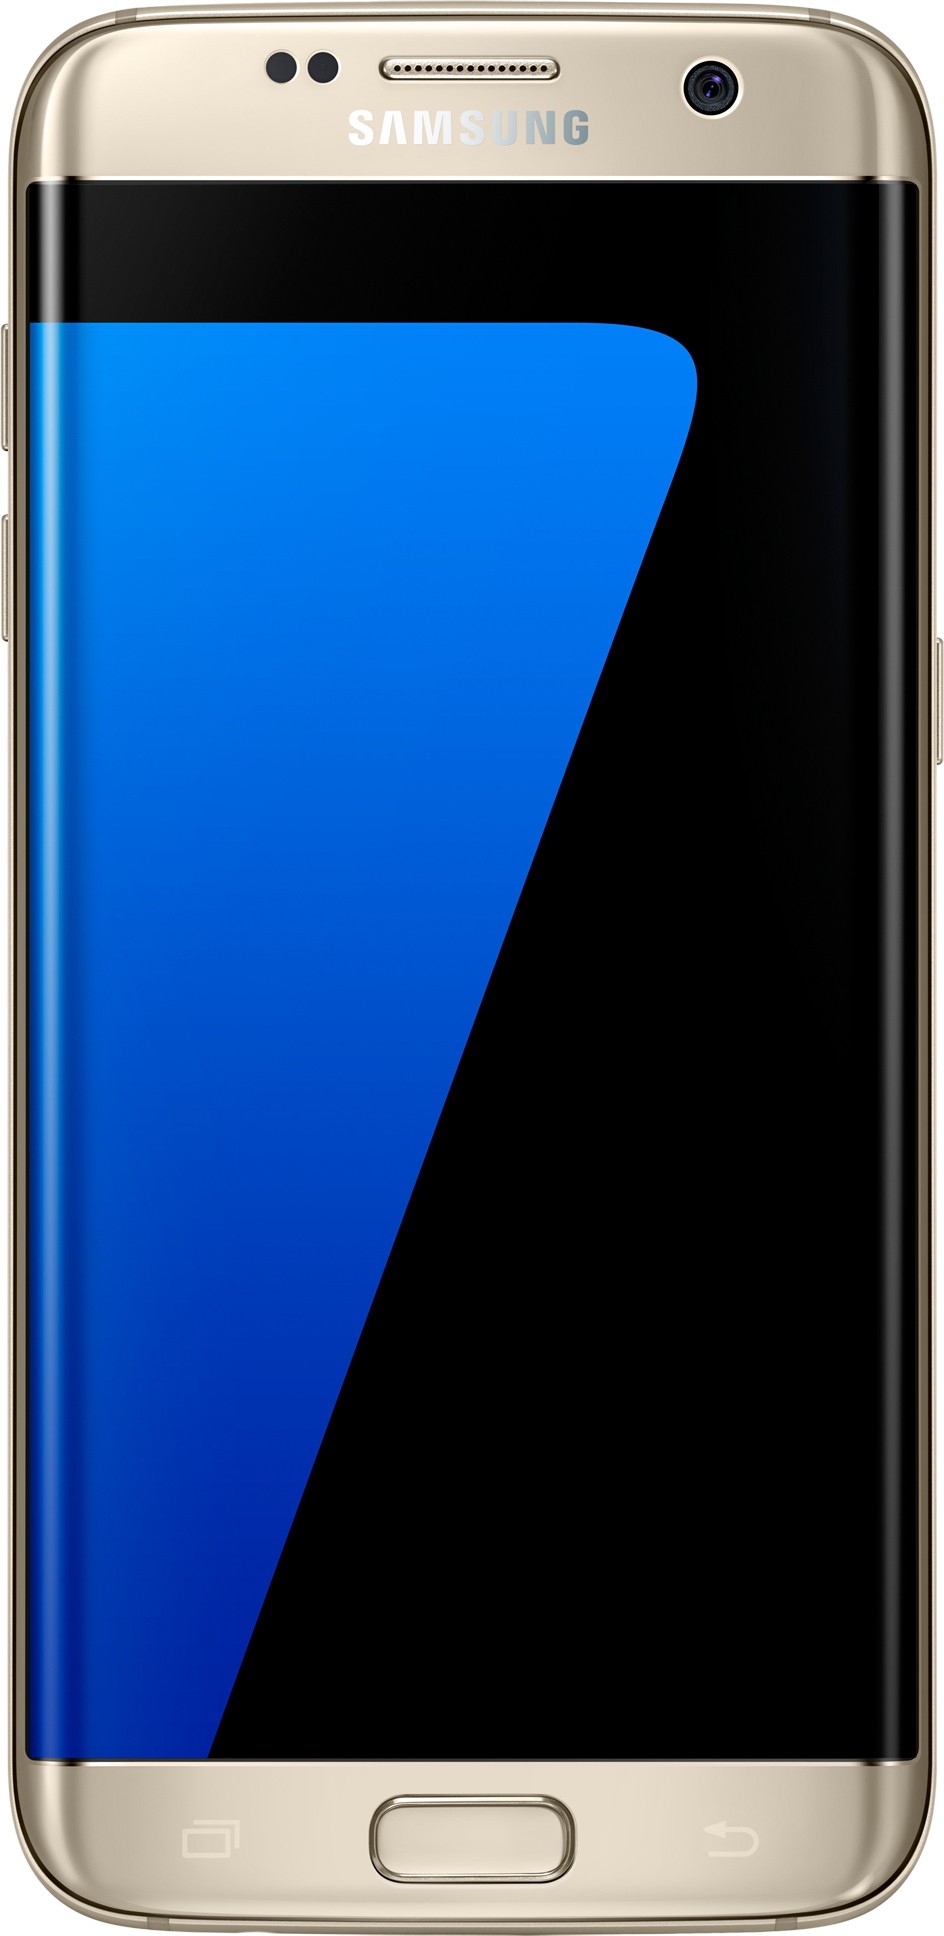 Samsung galaxy S7 và cách phân chia danh sách sản phẩm.